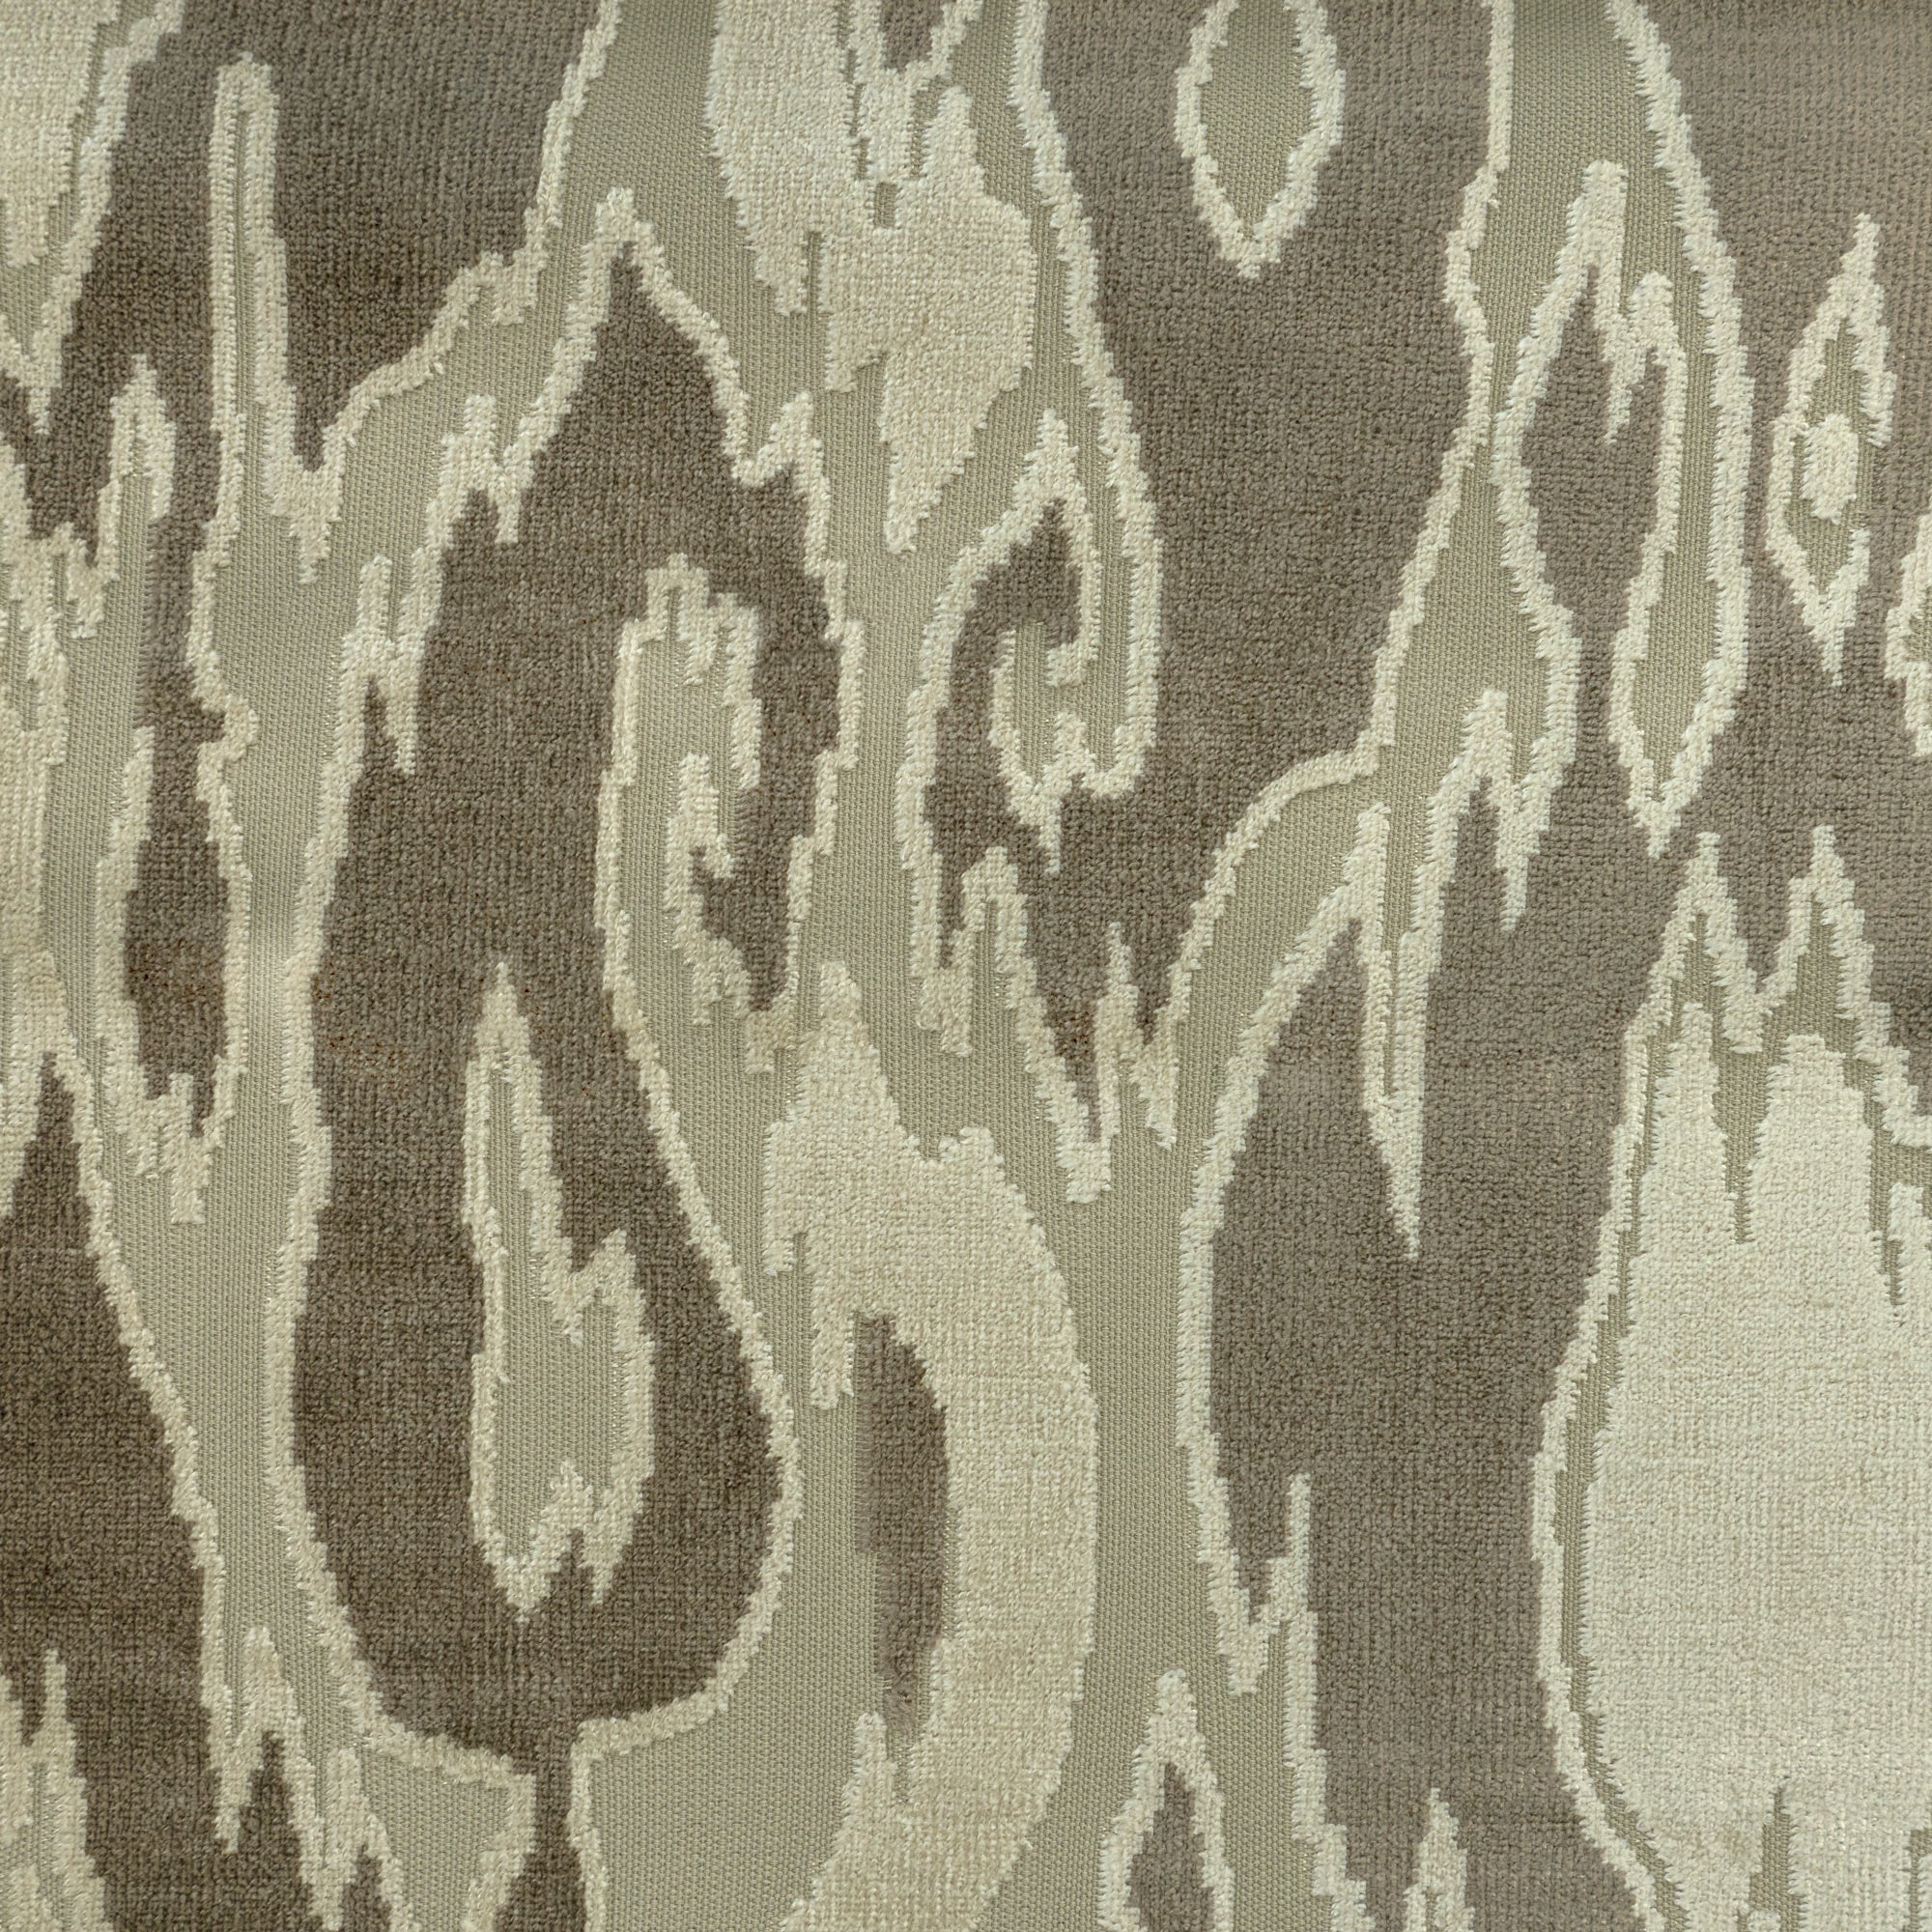 Designer Velvet Upholstery Fabric - Green Grey